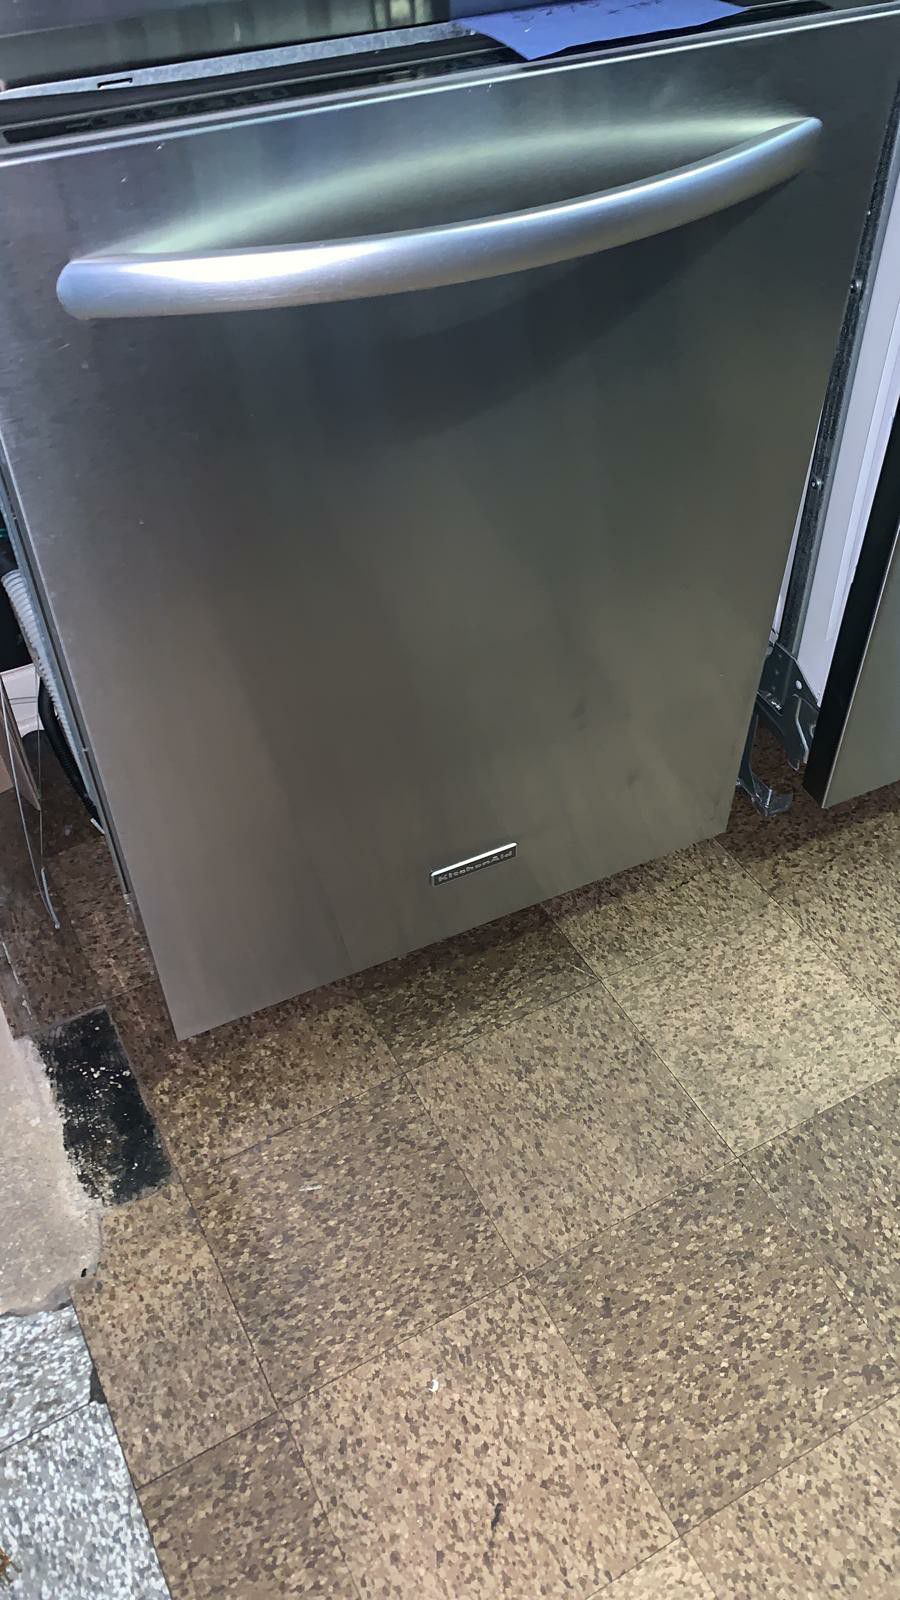 KitchenAid stainless steel dishwasher excellent condition